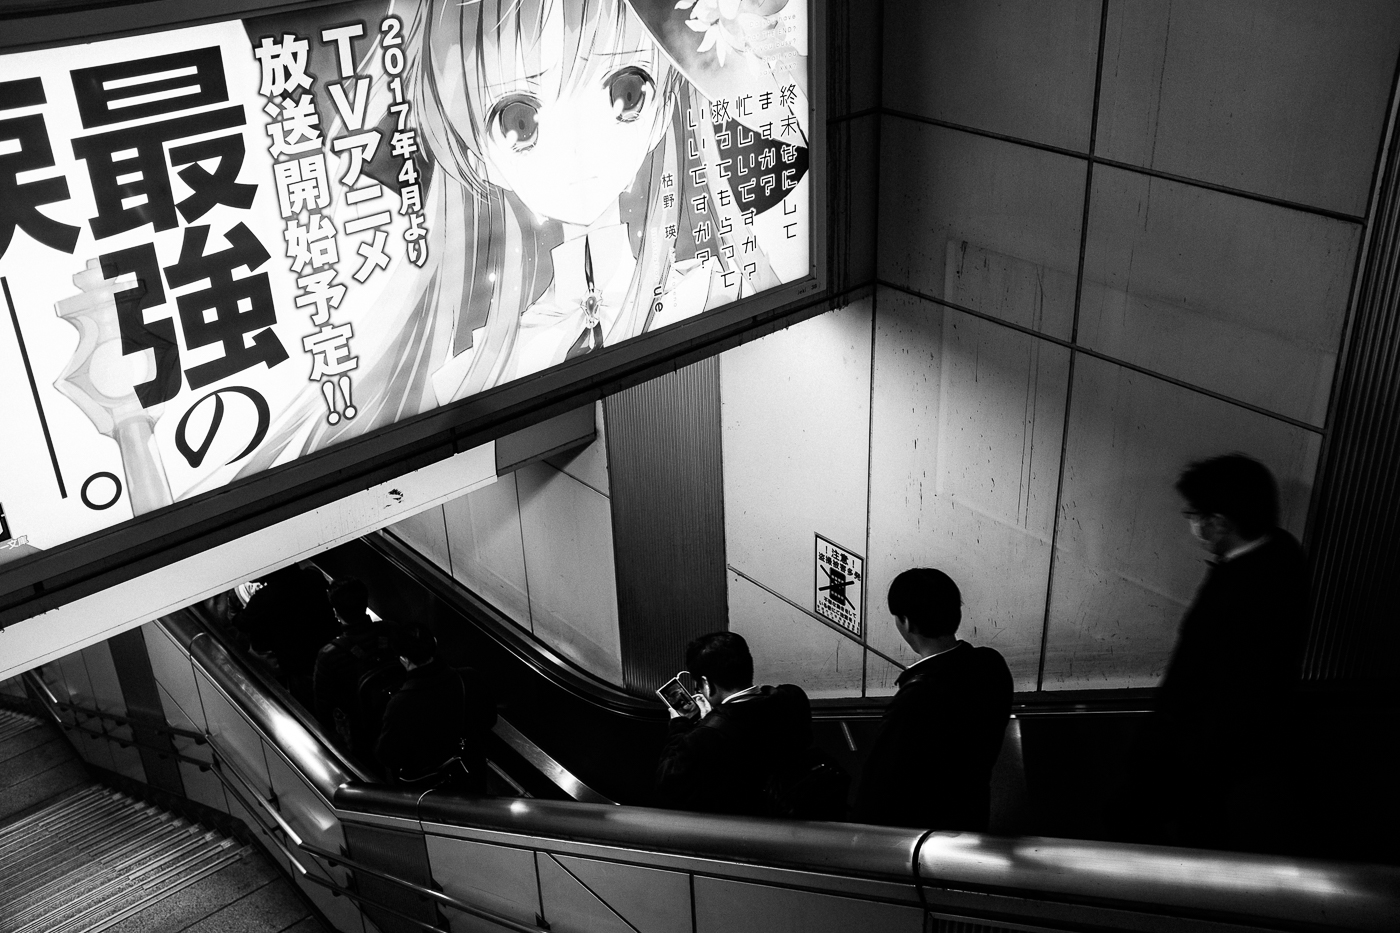 La journée se termine, il est temps de prendre le métro pour ces travailleurs japonais